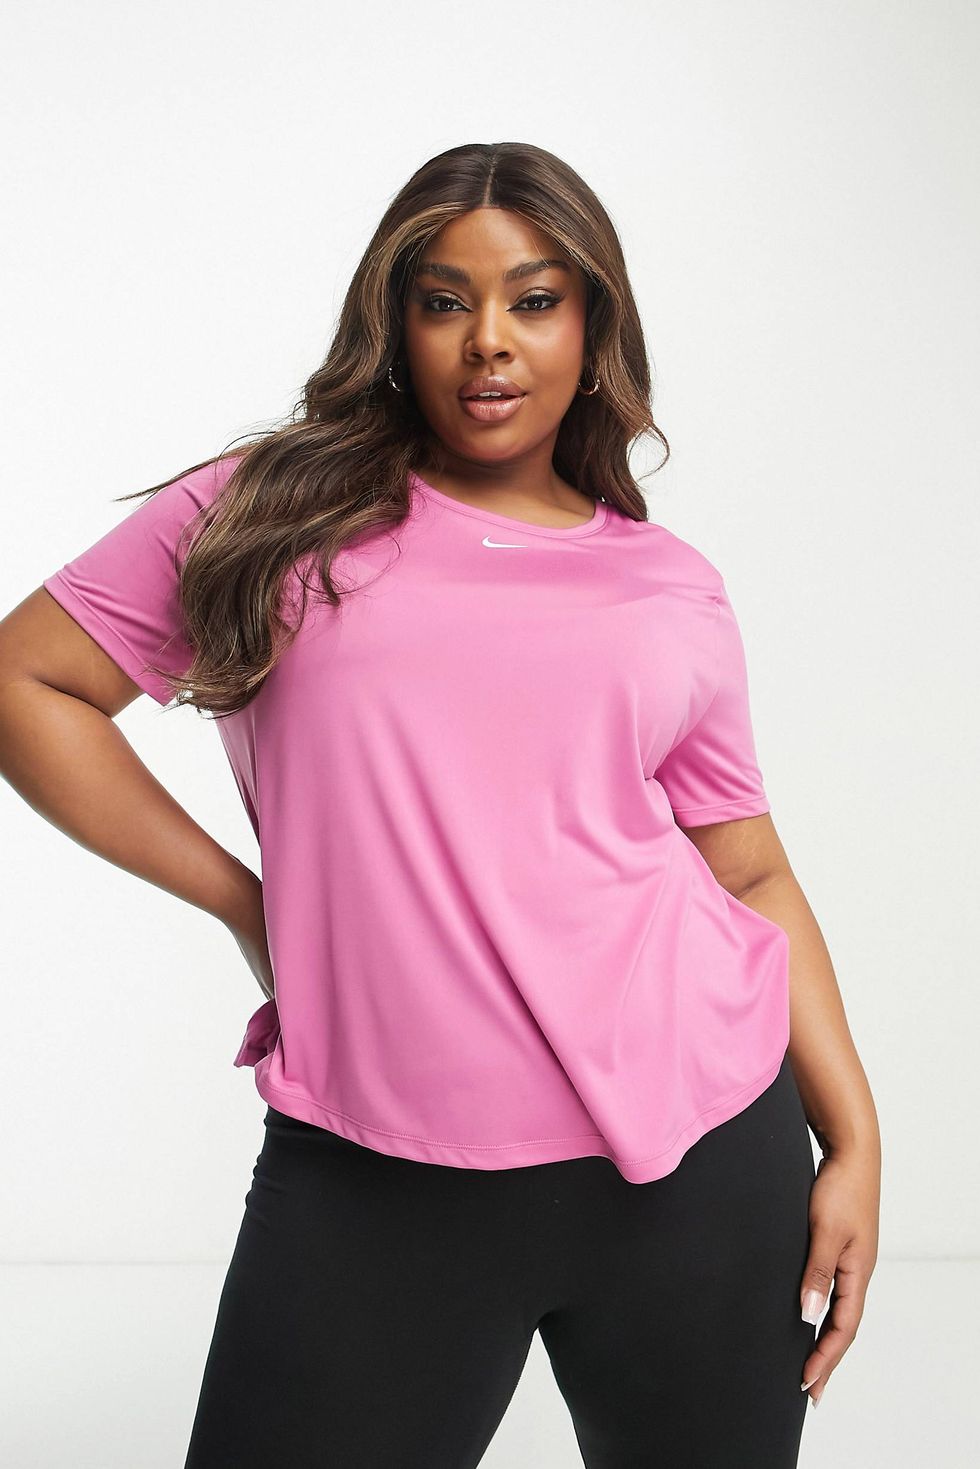 Nike One Training Plus dri fit t-shirt in fuschia pink